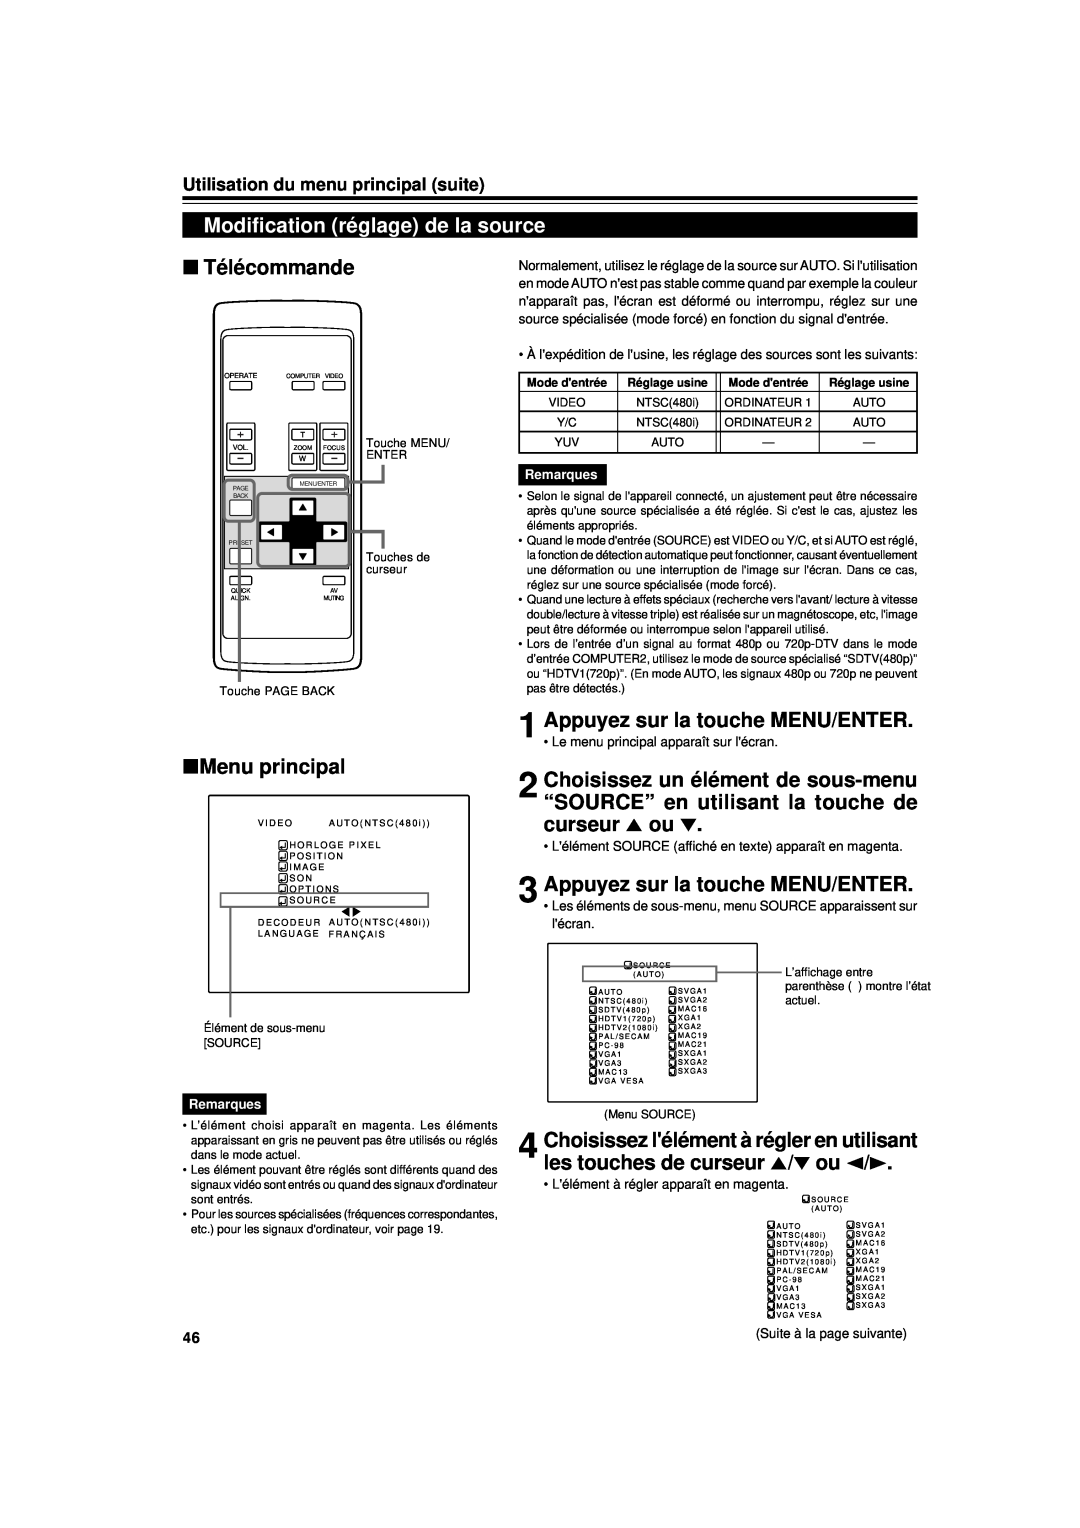 JVC DLA-G11U manual Modification réglage de la source, Télécommande, Menu principal, Utilisation du menu principal suite 